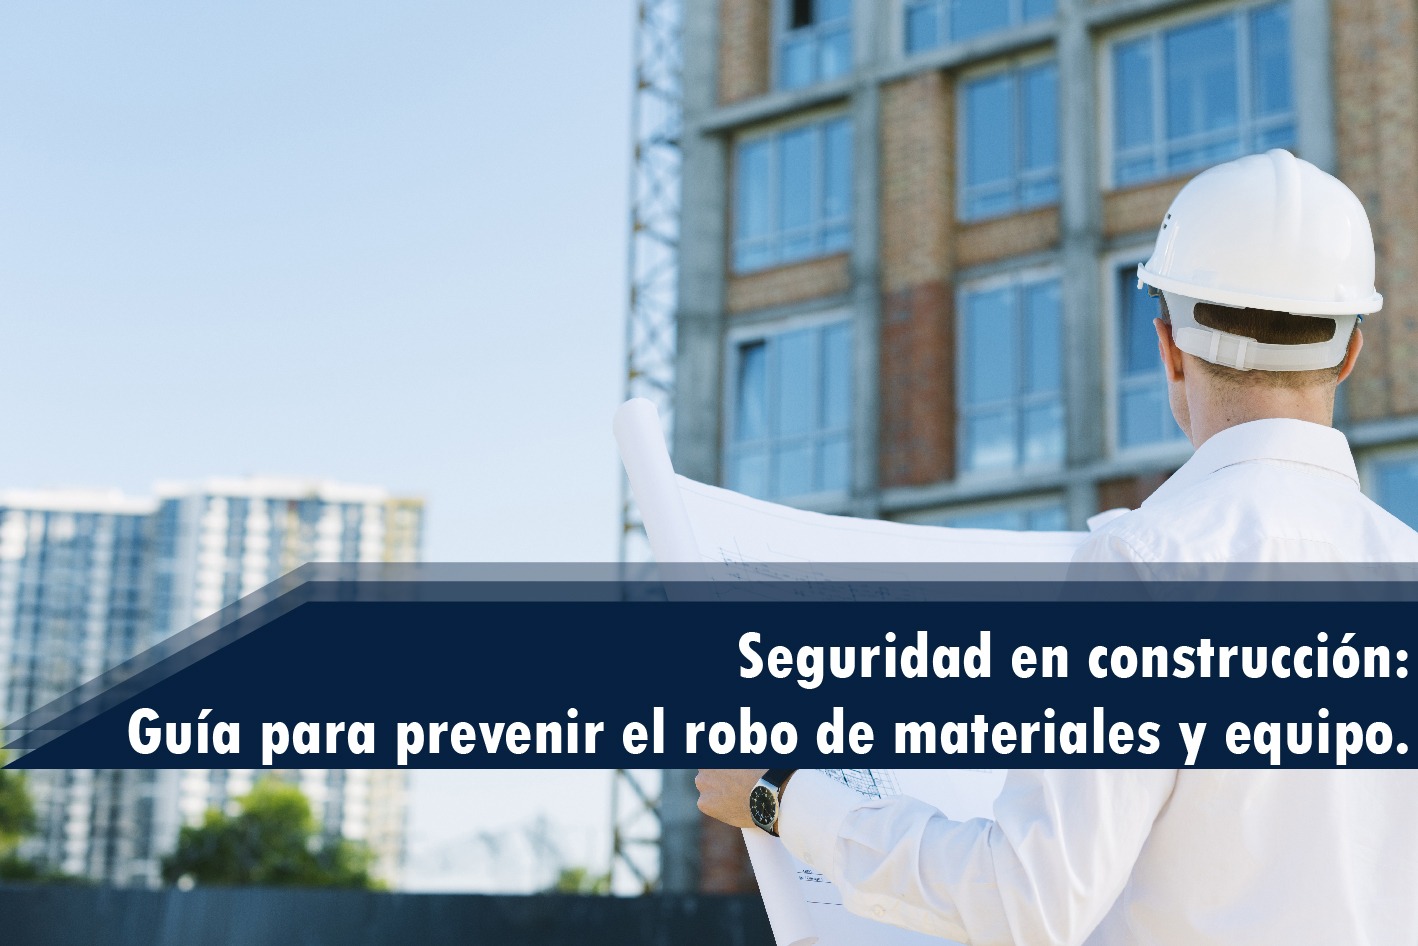 Seguridad en construcción: Guía para prevenir el robo de materiales y equipo.